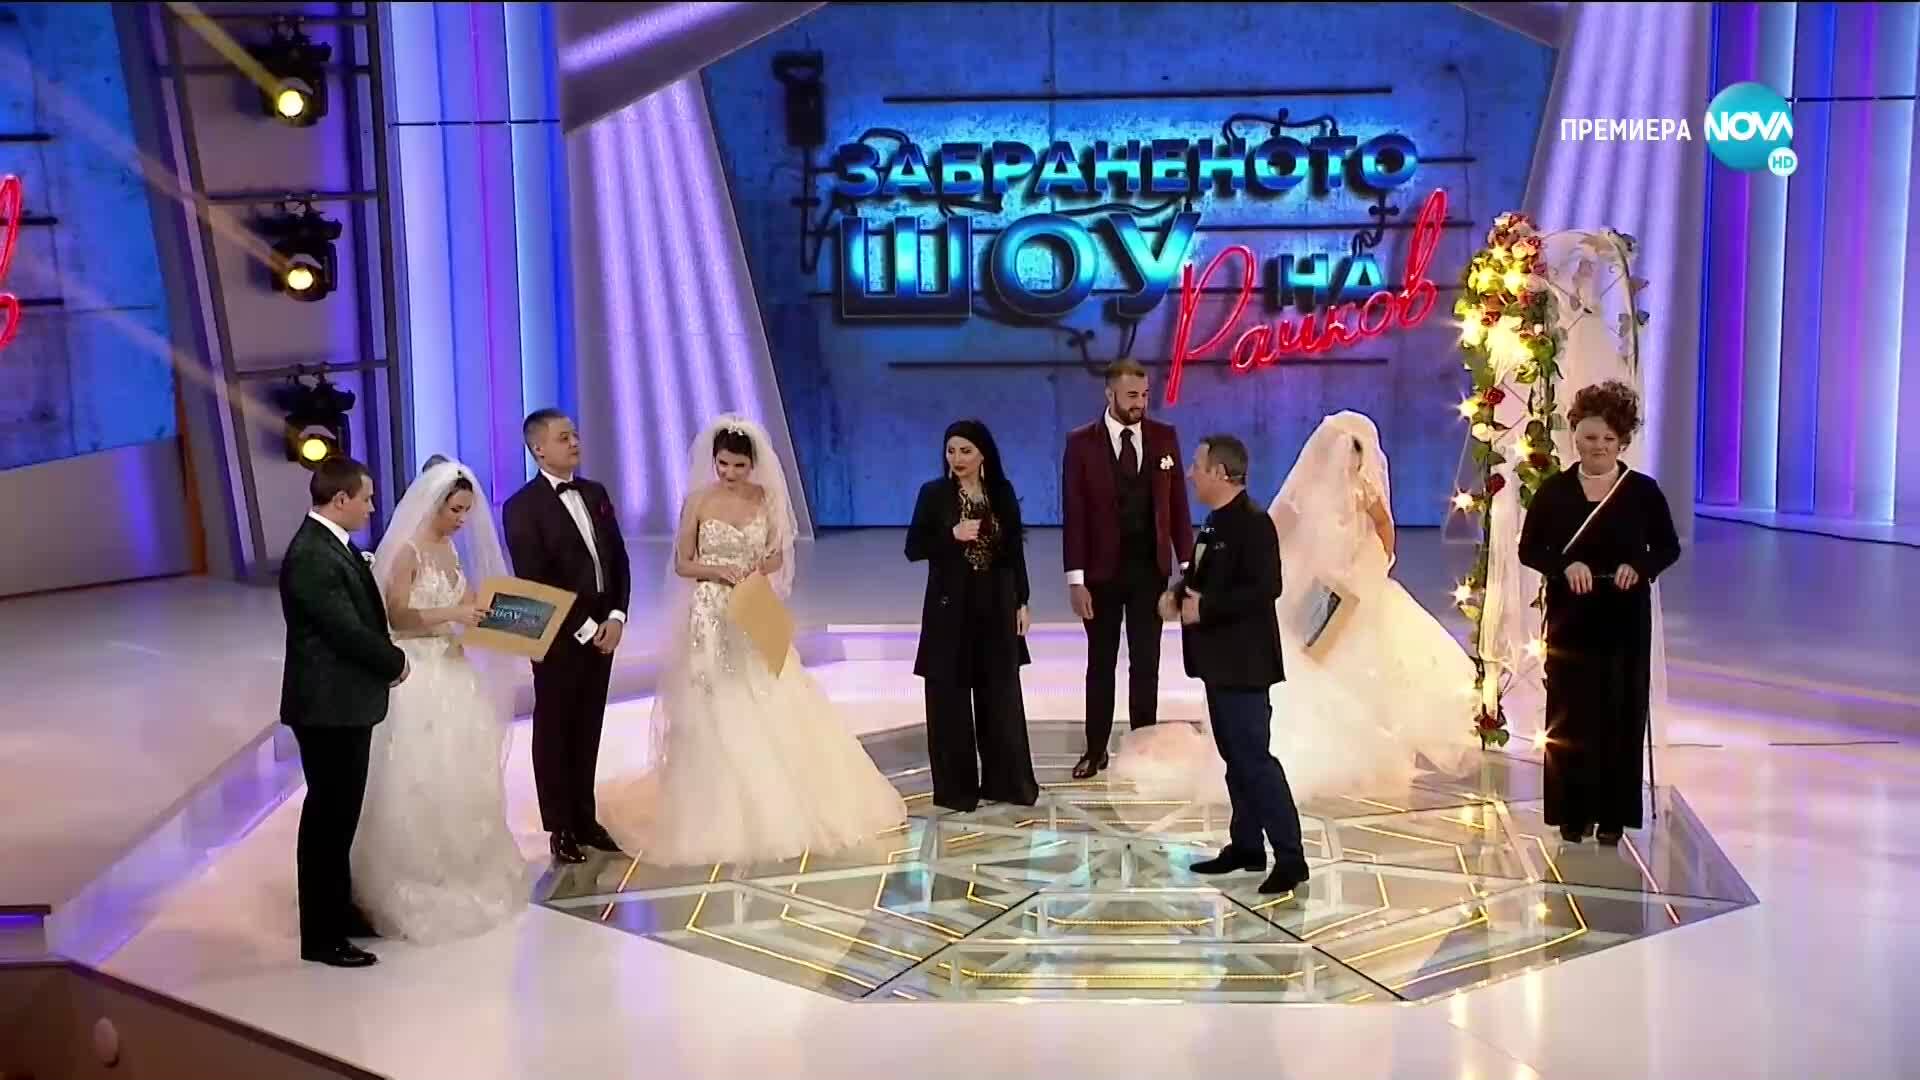 Сватби в Забраненото шоу на Рачков (14.03.2021)